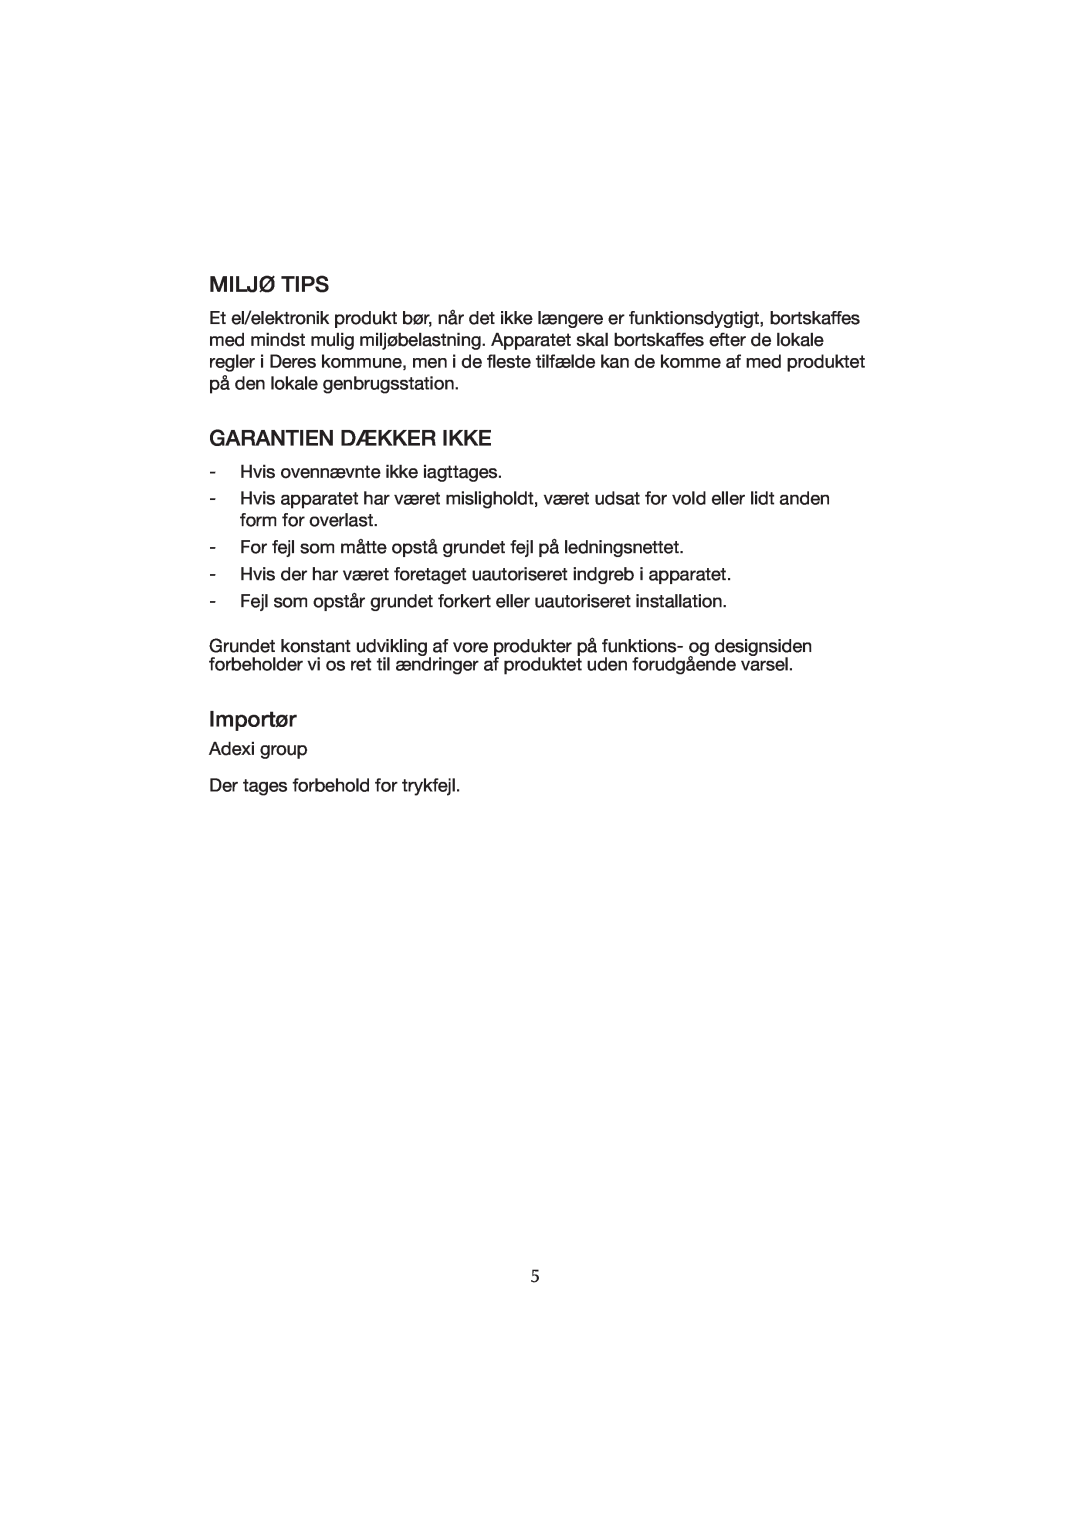 Melissa WK-222 manual Miljø Tips, Garantien Dækker Ikke, Importør 